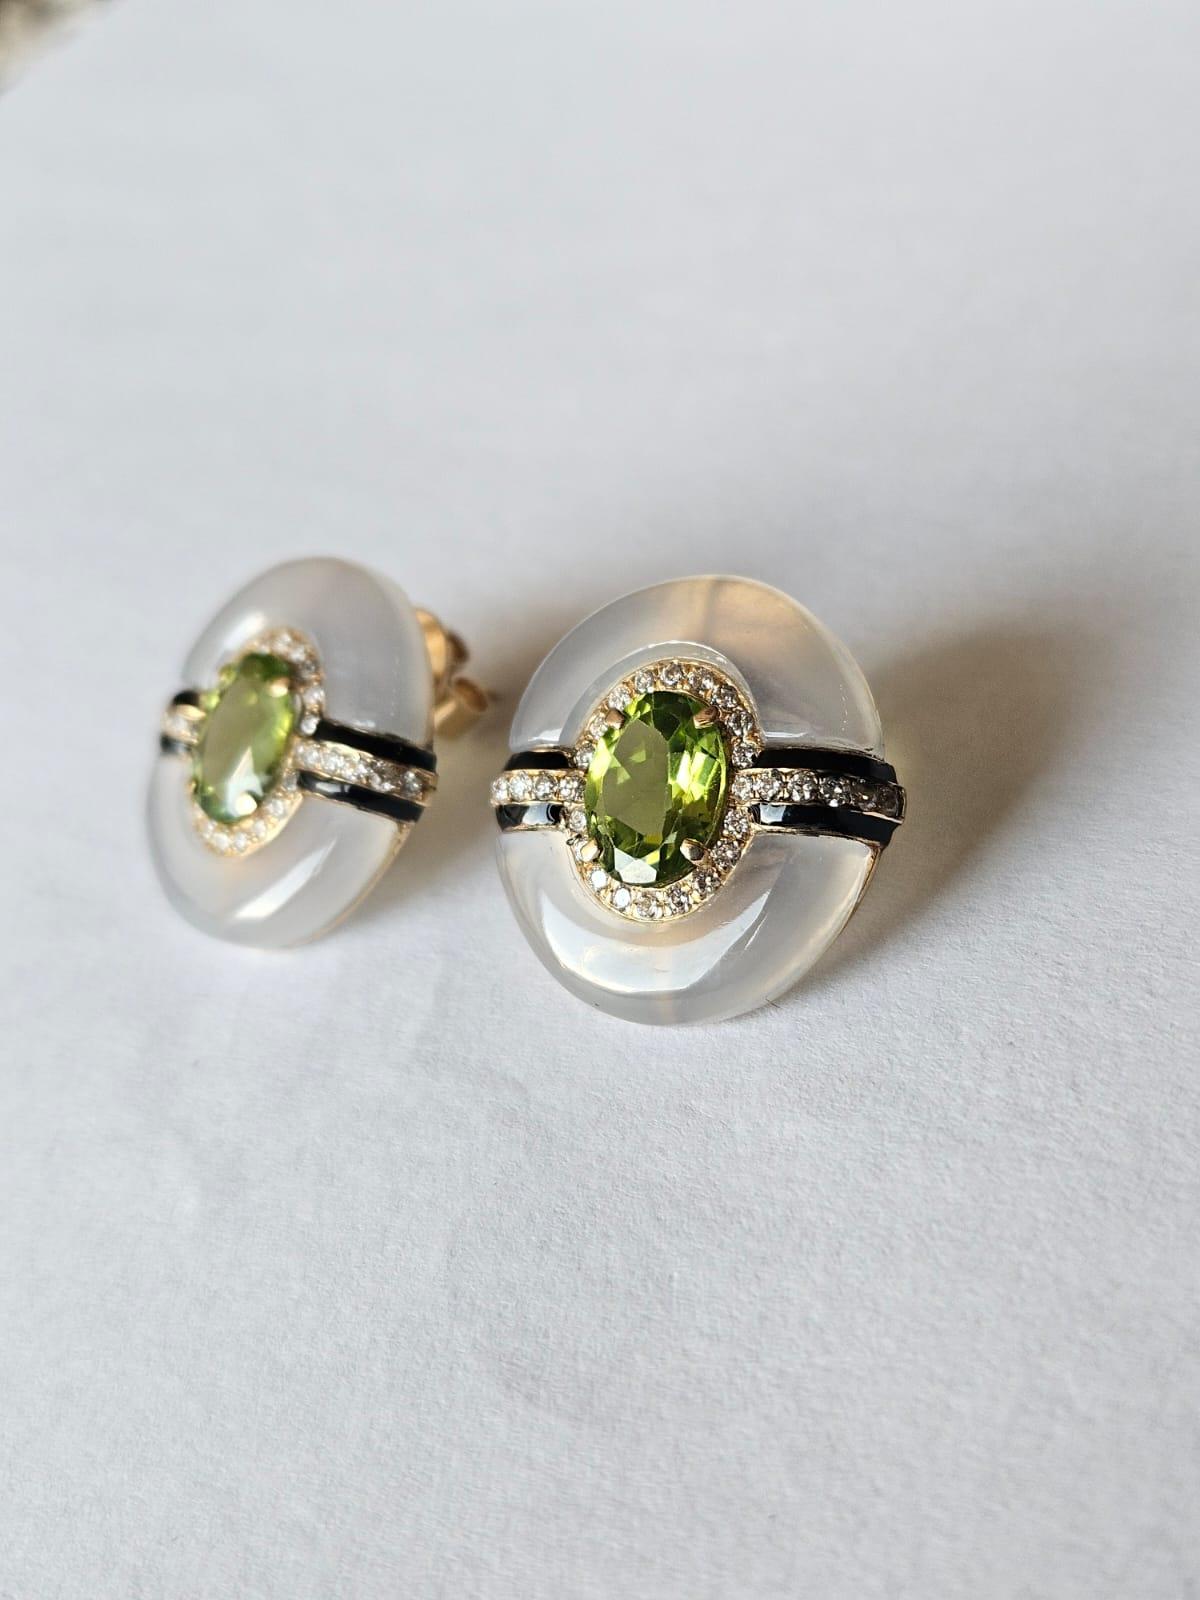 Oval Cut Set in 18K Gold, 3.55 carats, Peridot, Chalcedony & Diamonds Stud Earrings For Sale